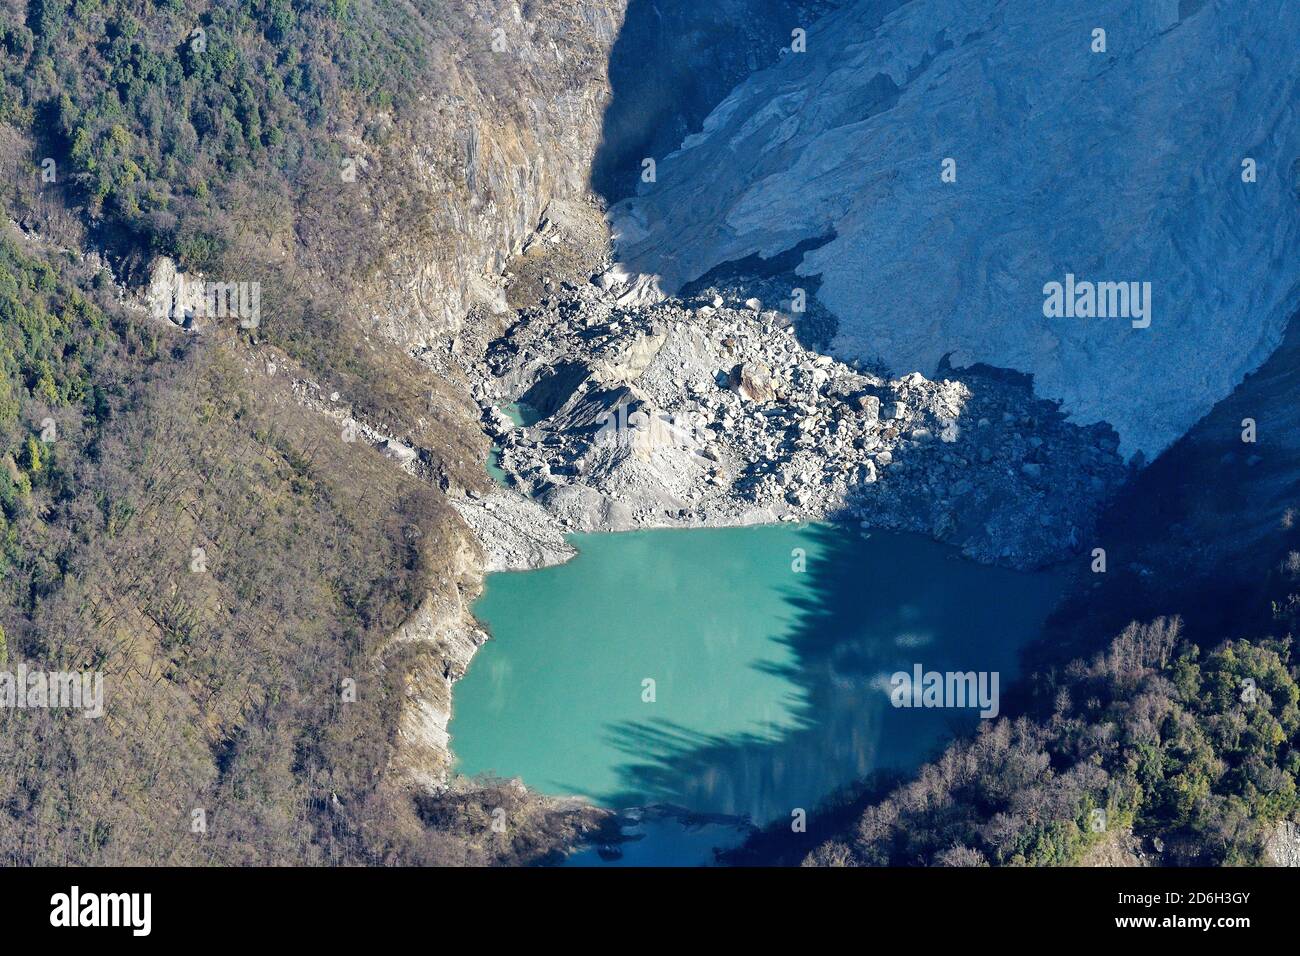 Foto aerea del nuovo lago formato dal ritrattamento del ghiacciaio a causa del riscaldamento globale / cambiamento climatico montagna Annapurna, Nepal Foto Stock